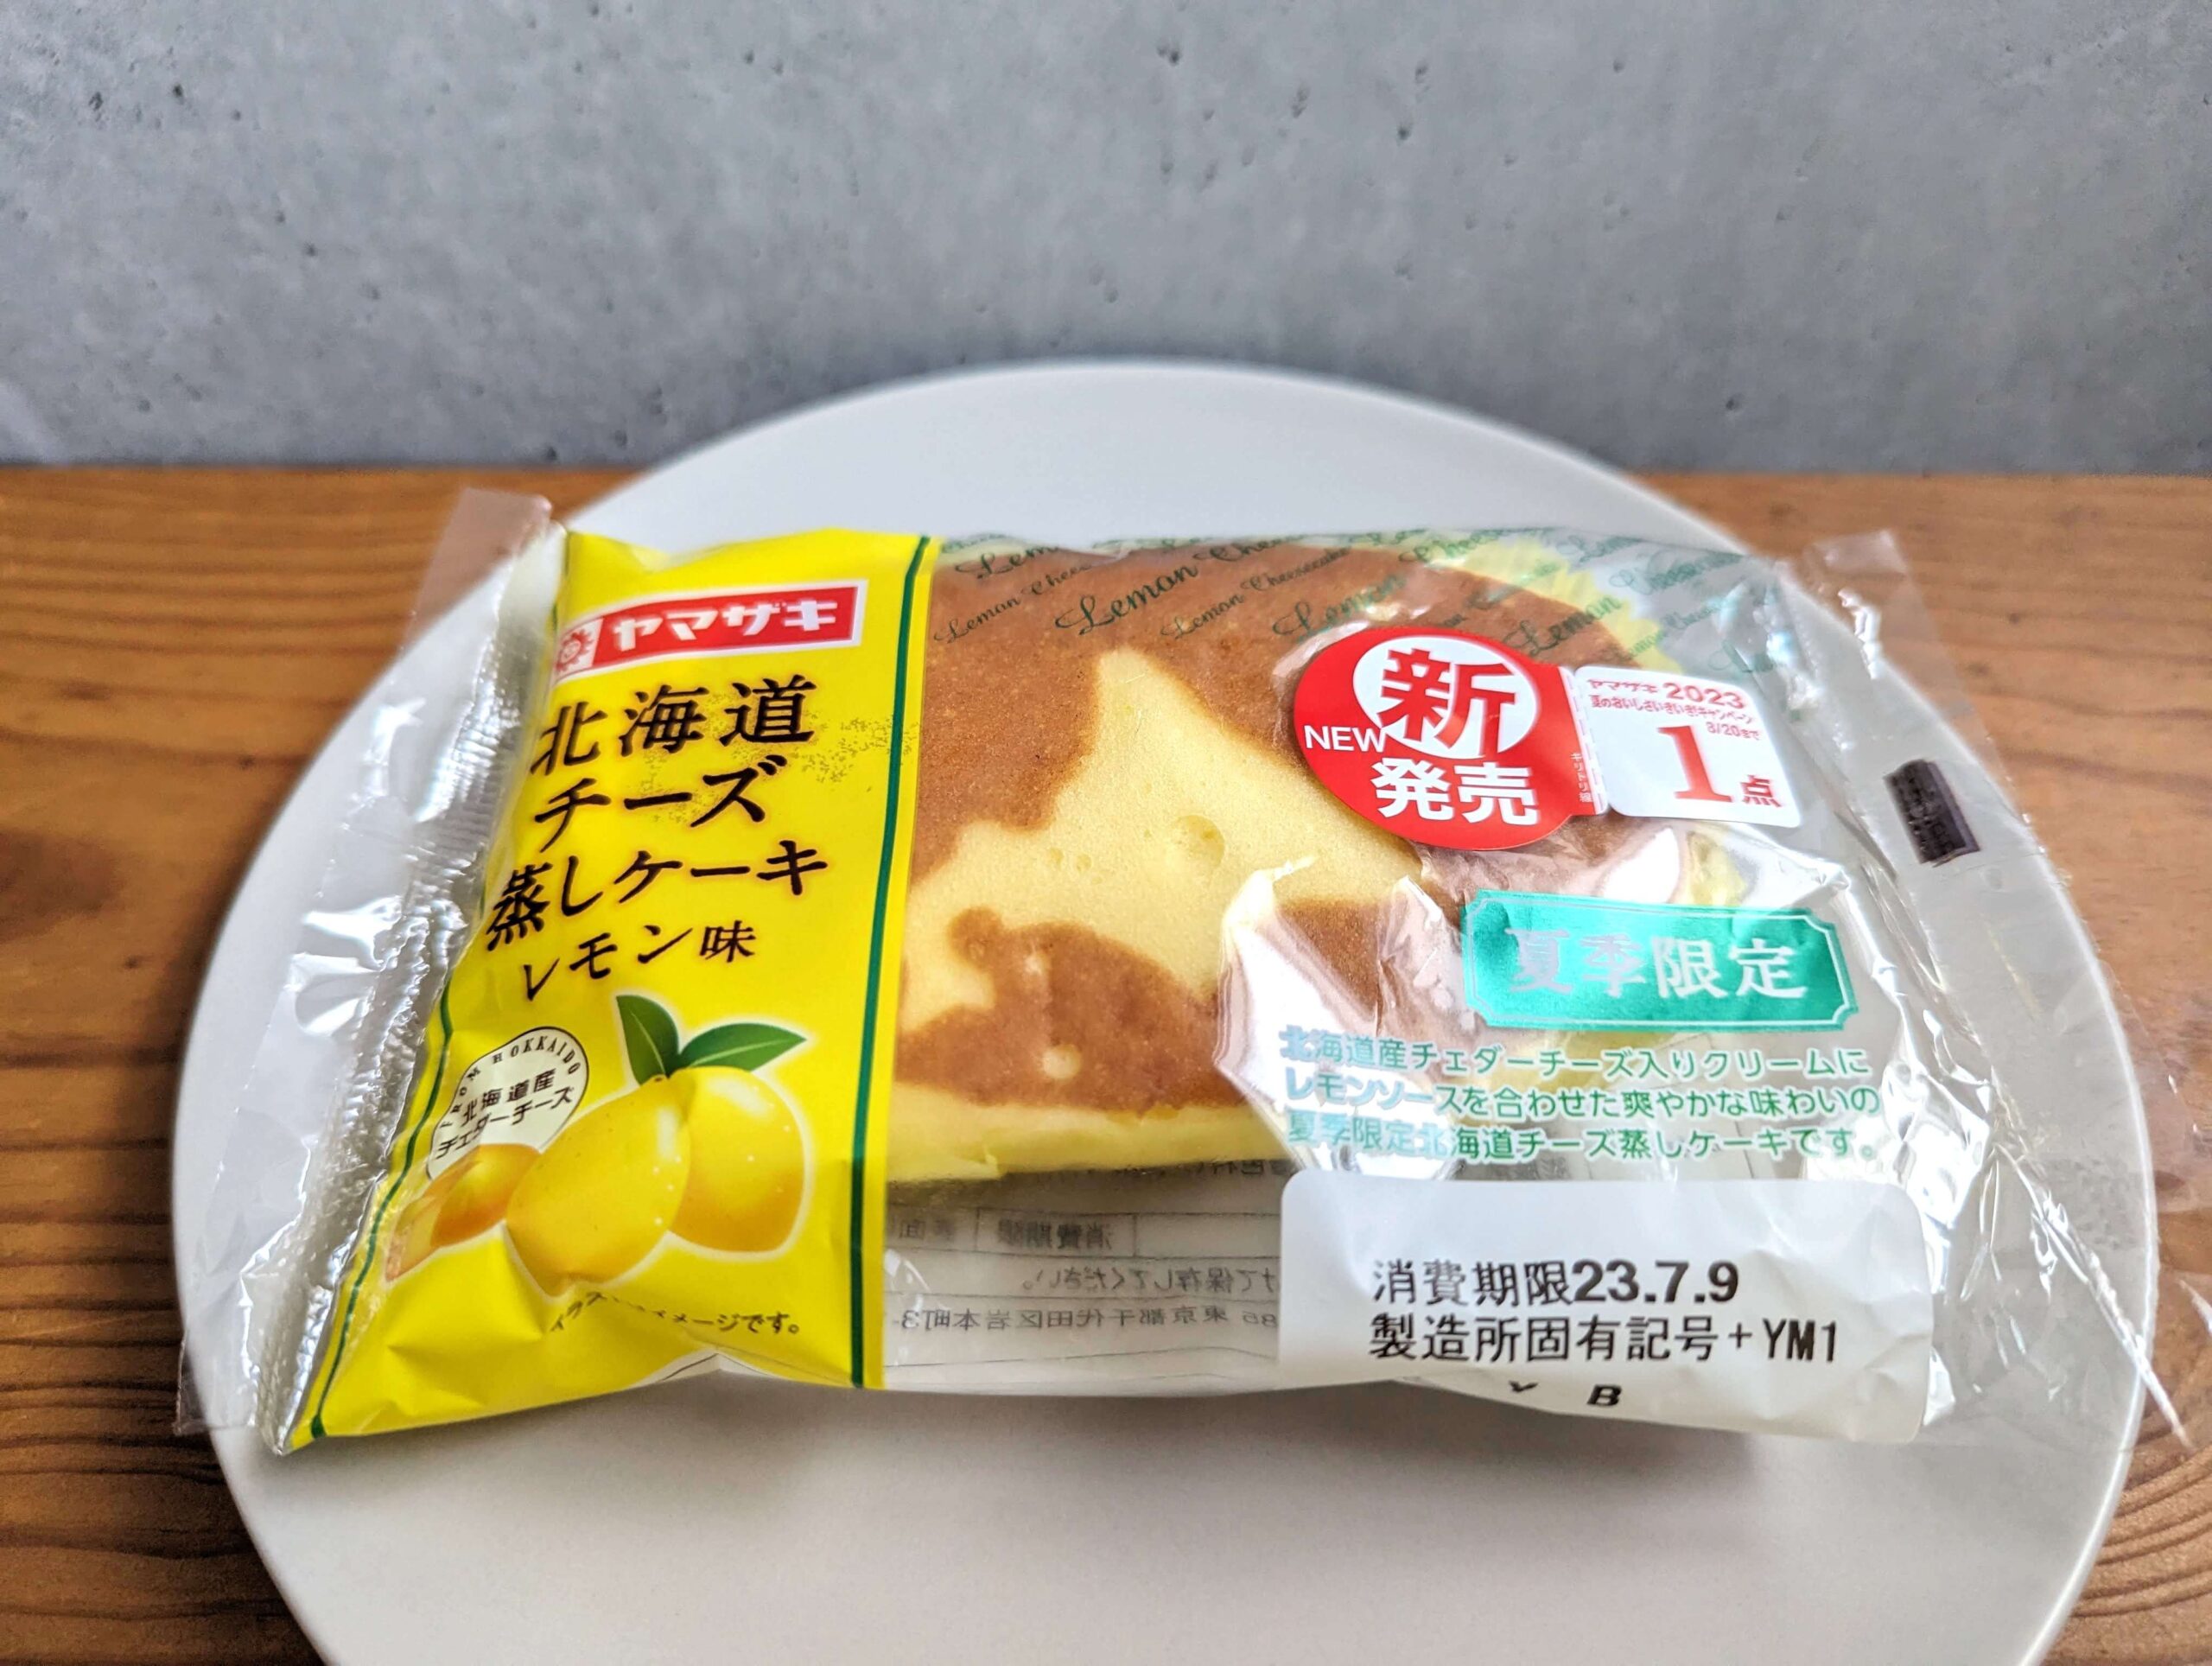 山崎製パン・北海道チーズ蒸しケーキ レモン味 (3)